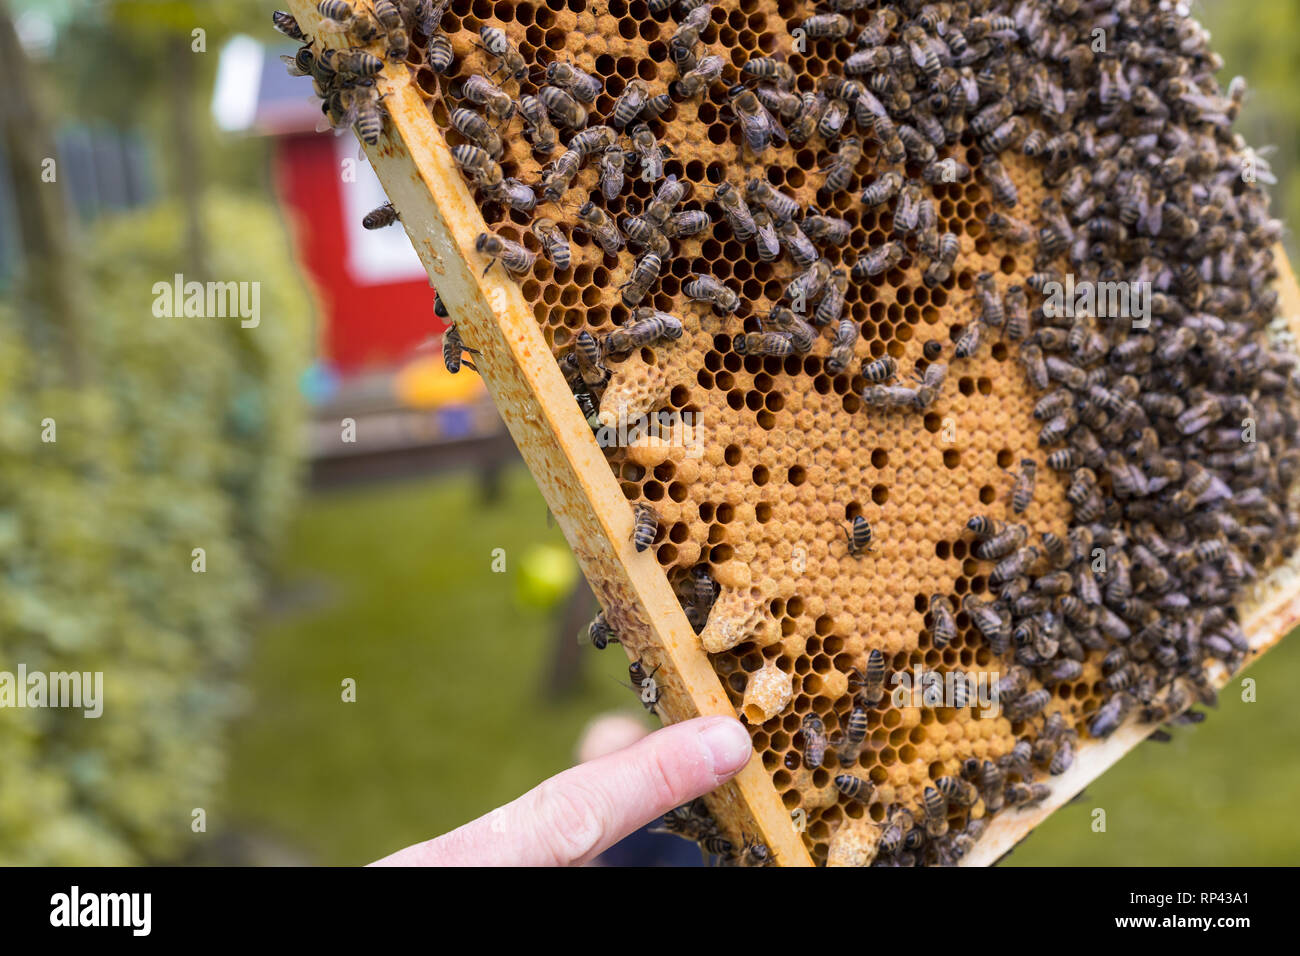 El apicultor comprueba un fotograma de una colmena. Se muestra abierto y cerrado las celdas de un panal de cría y abejas rampante. El dedo apunta a una celda reina abierta Foto de stock